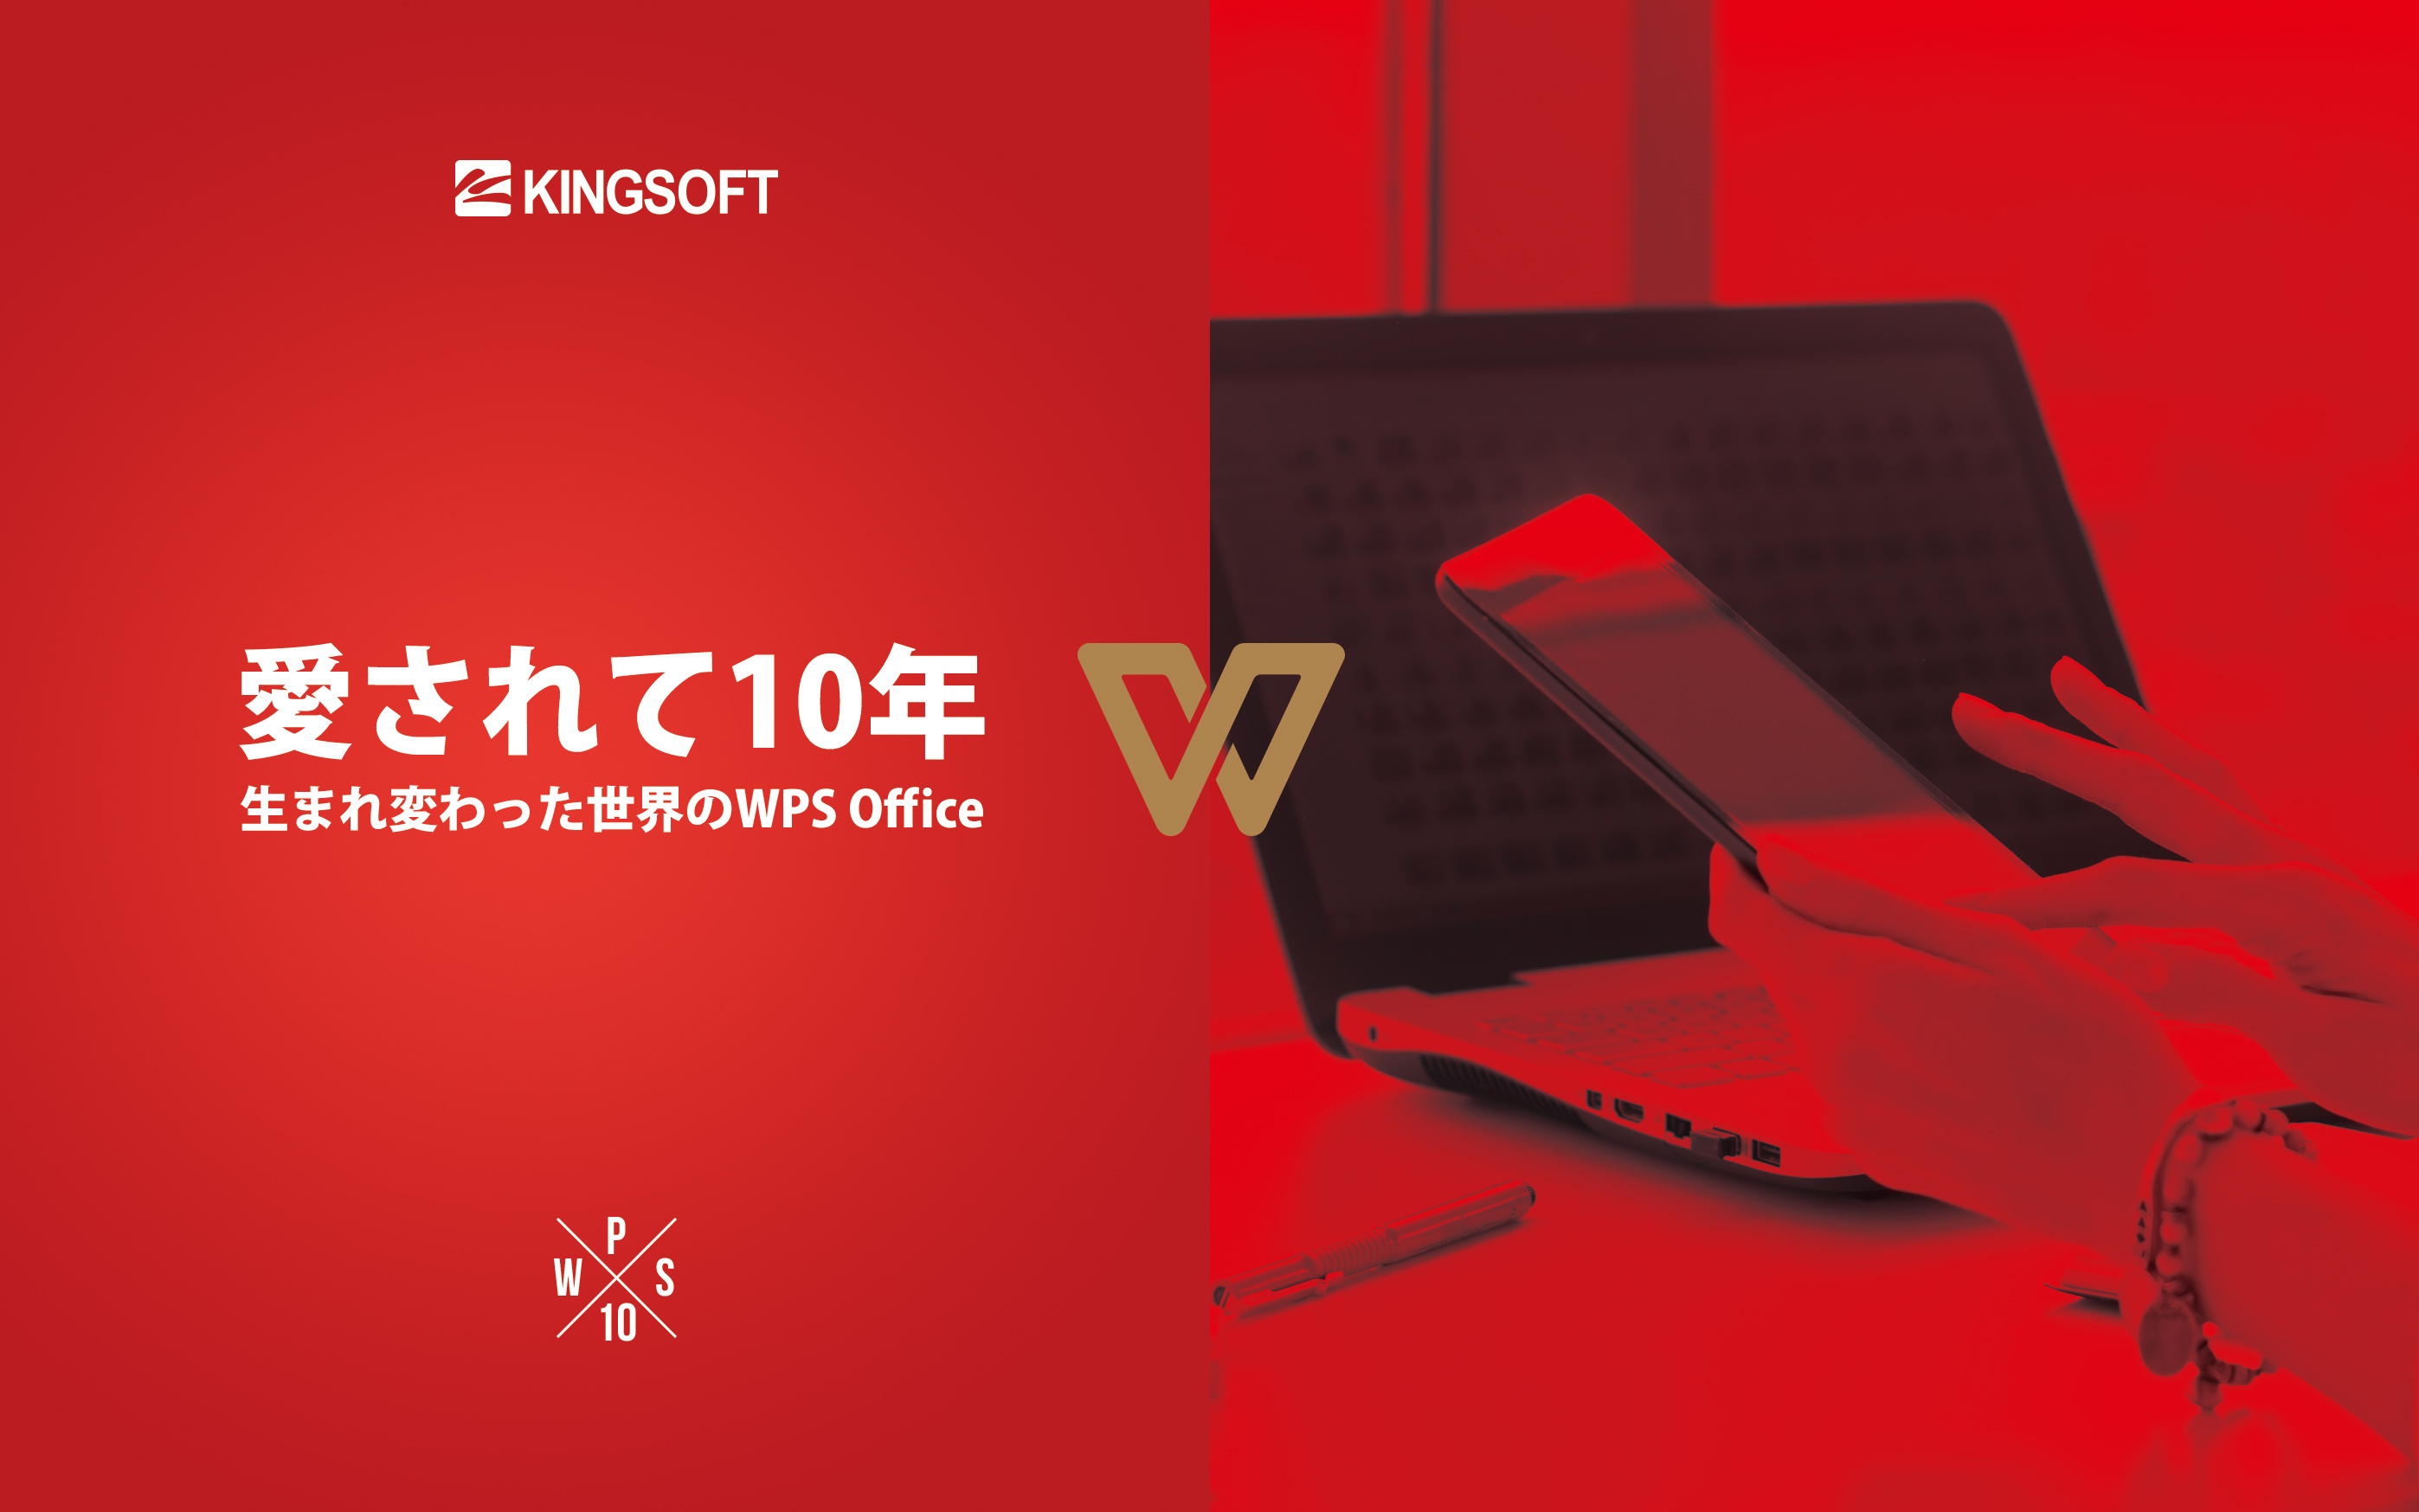 キングソフト、新たな総合オフィスソフト「WPS Office」の日本市場展開を開始。10周年の節目に「KINGSOFT 